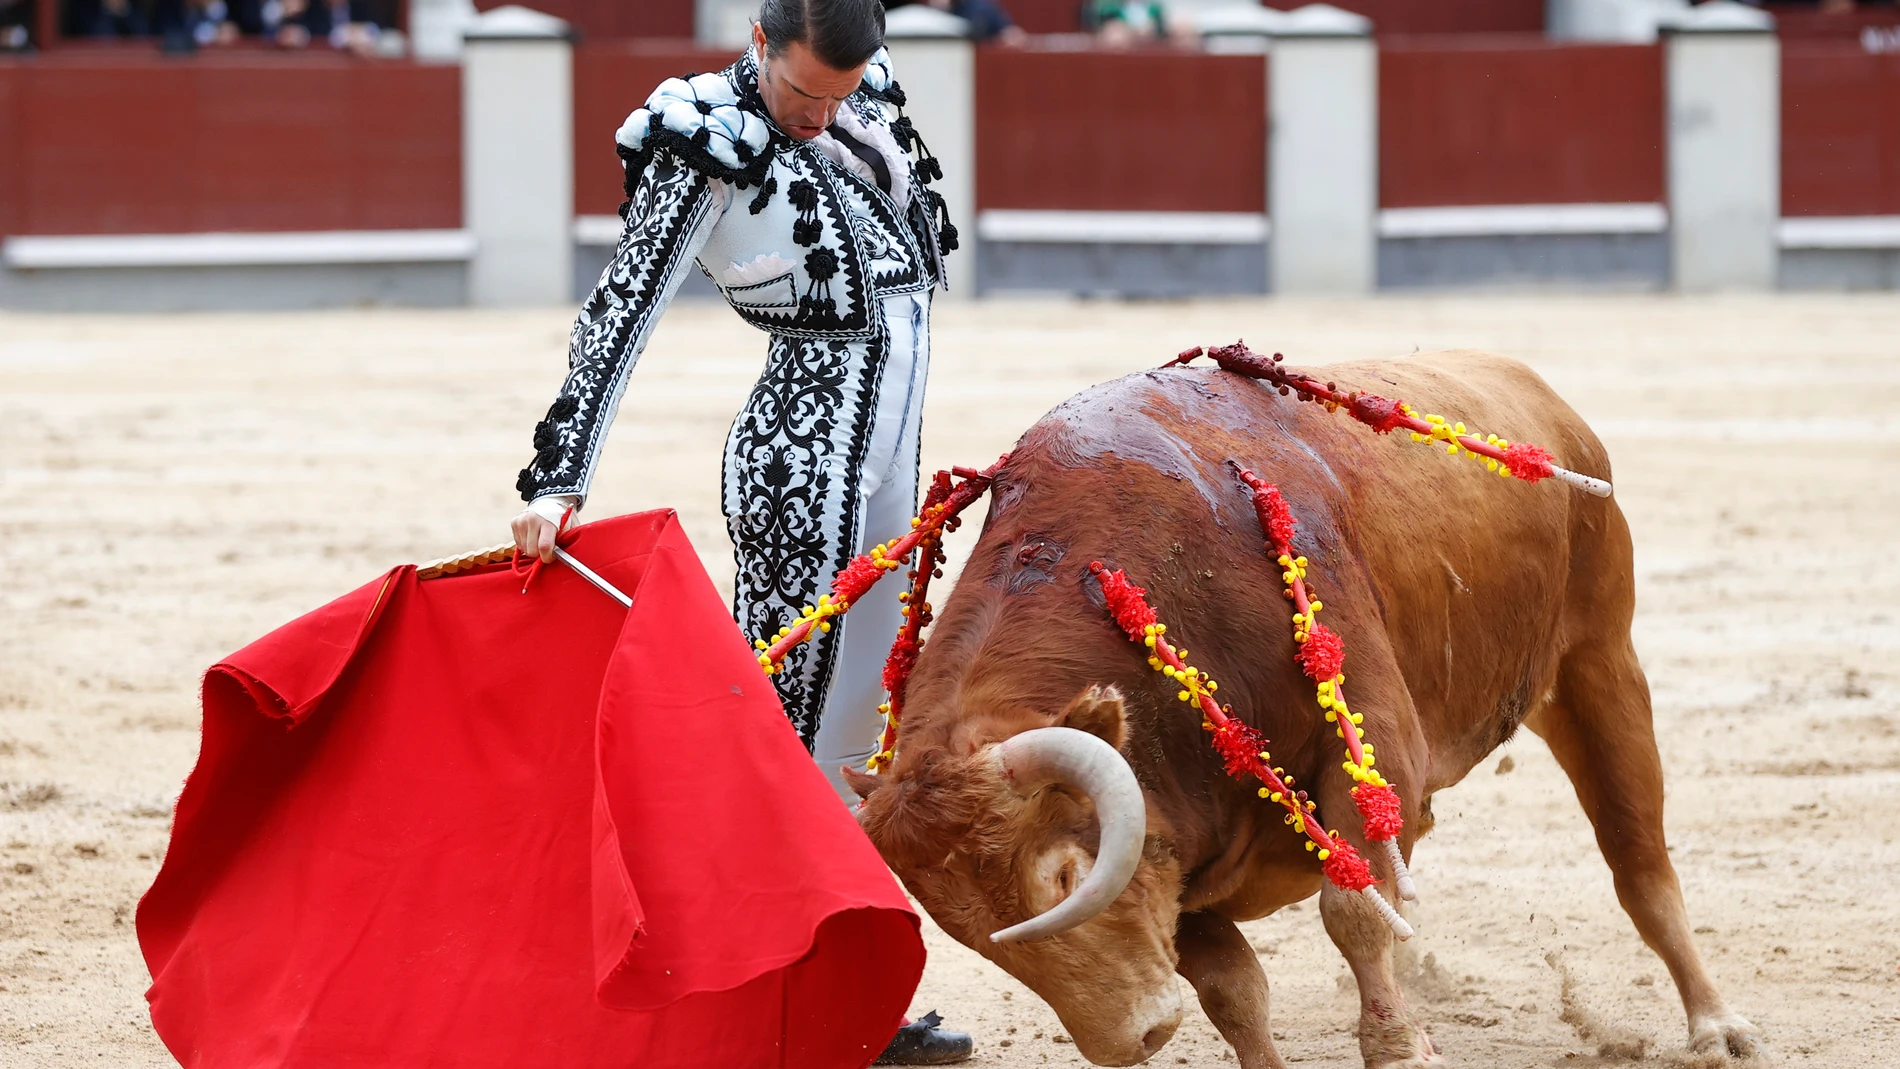 -FOTODELDÍA- MADRID, 02/05/2022.- El diestro Uceda Leal, durante la tradicional corrida Goyesca del 2 de mayo, con toros de la ganadería de El Cortijillo, este lunes en la plaza de toros de Las Ventas, en Madrid. EFE/Chema Moya